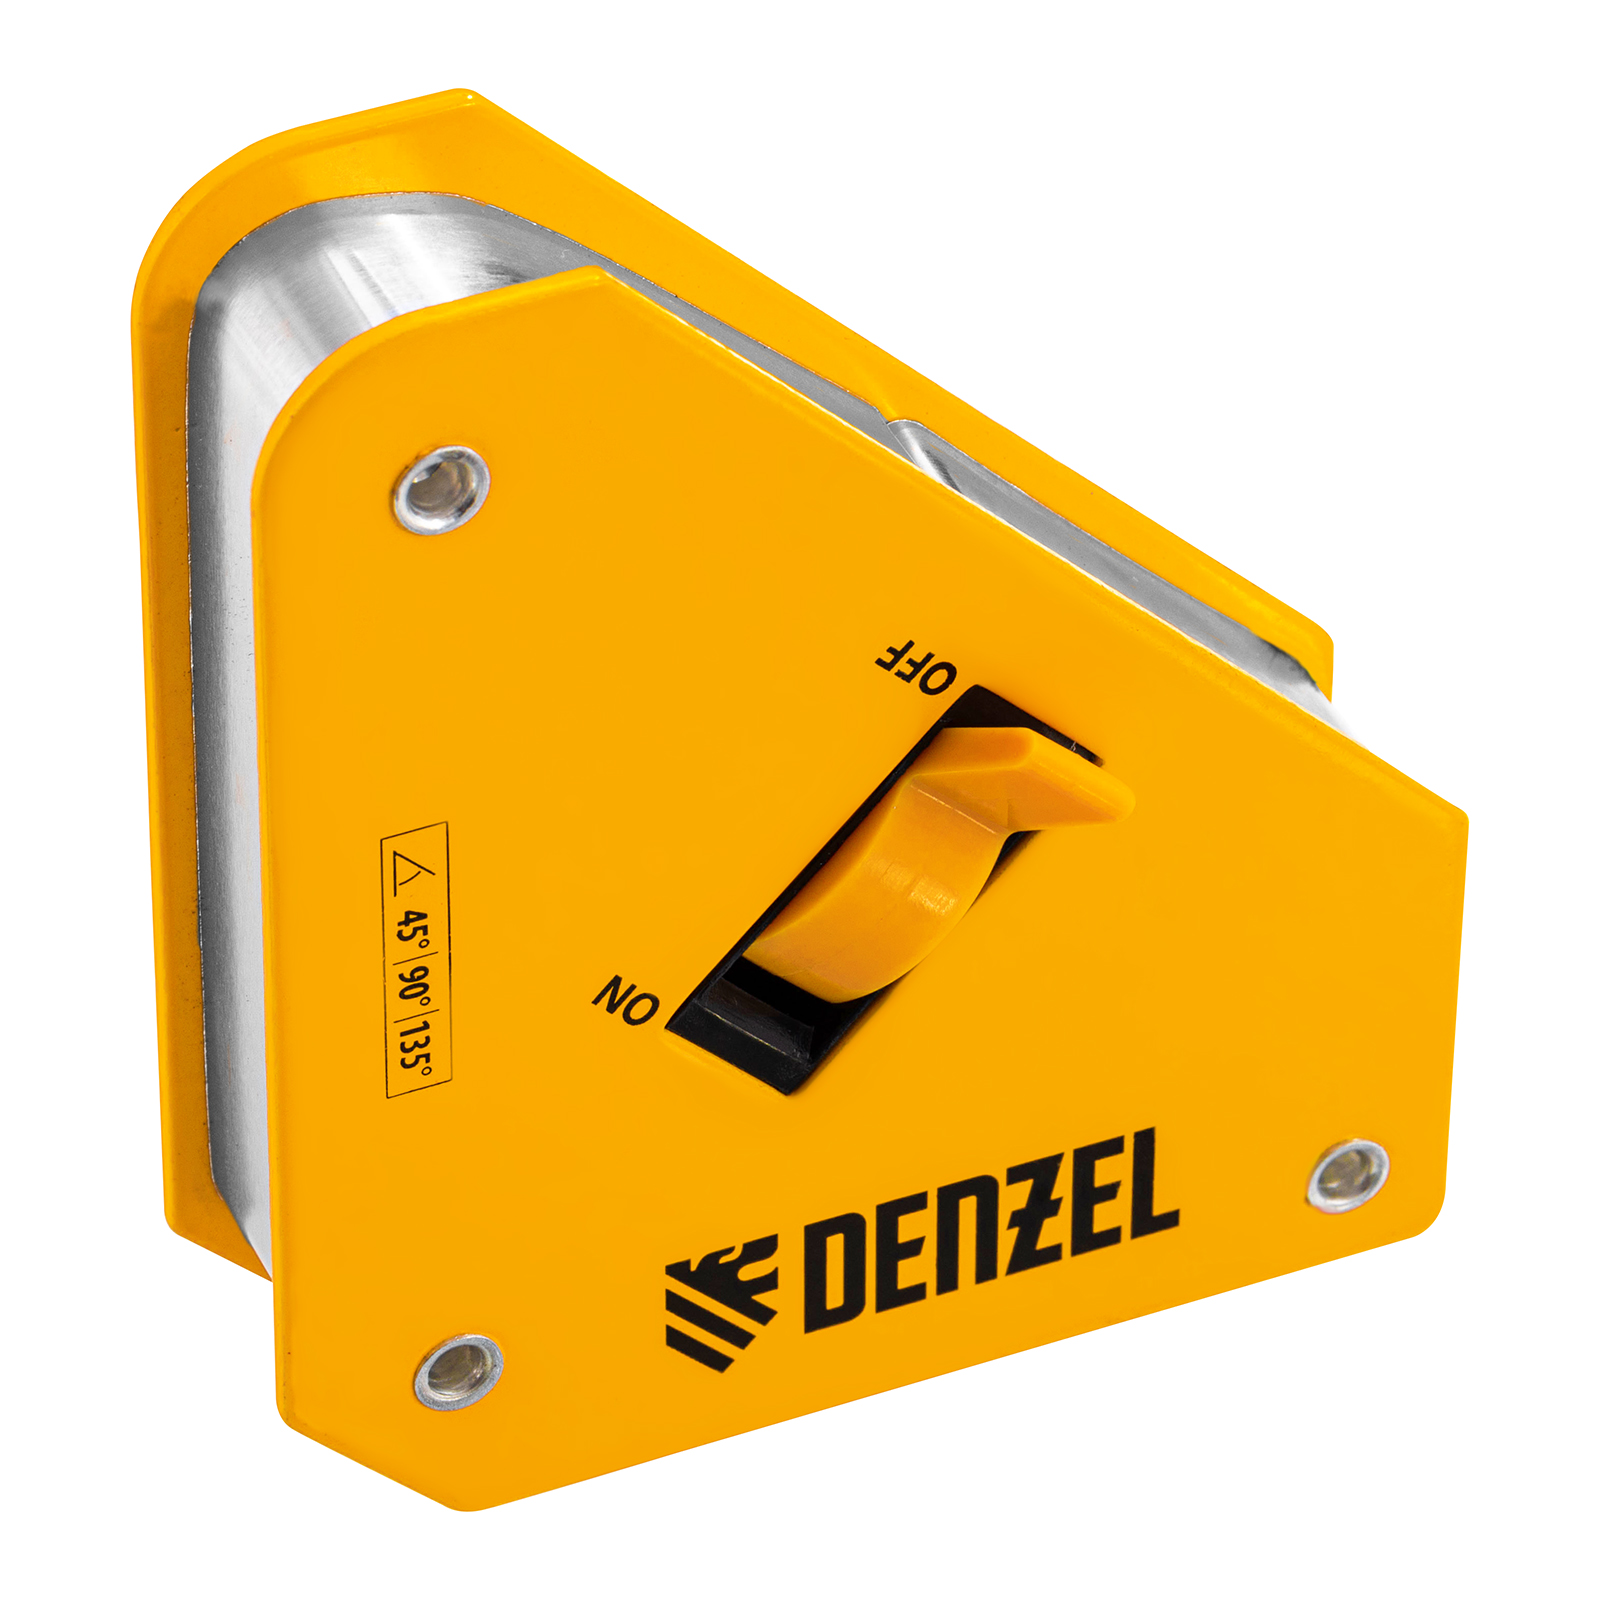 Фиксатор магнитный отключаемый для сварочных работ DENZEL усилие 30 LB, 45х90 град. 97561